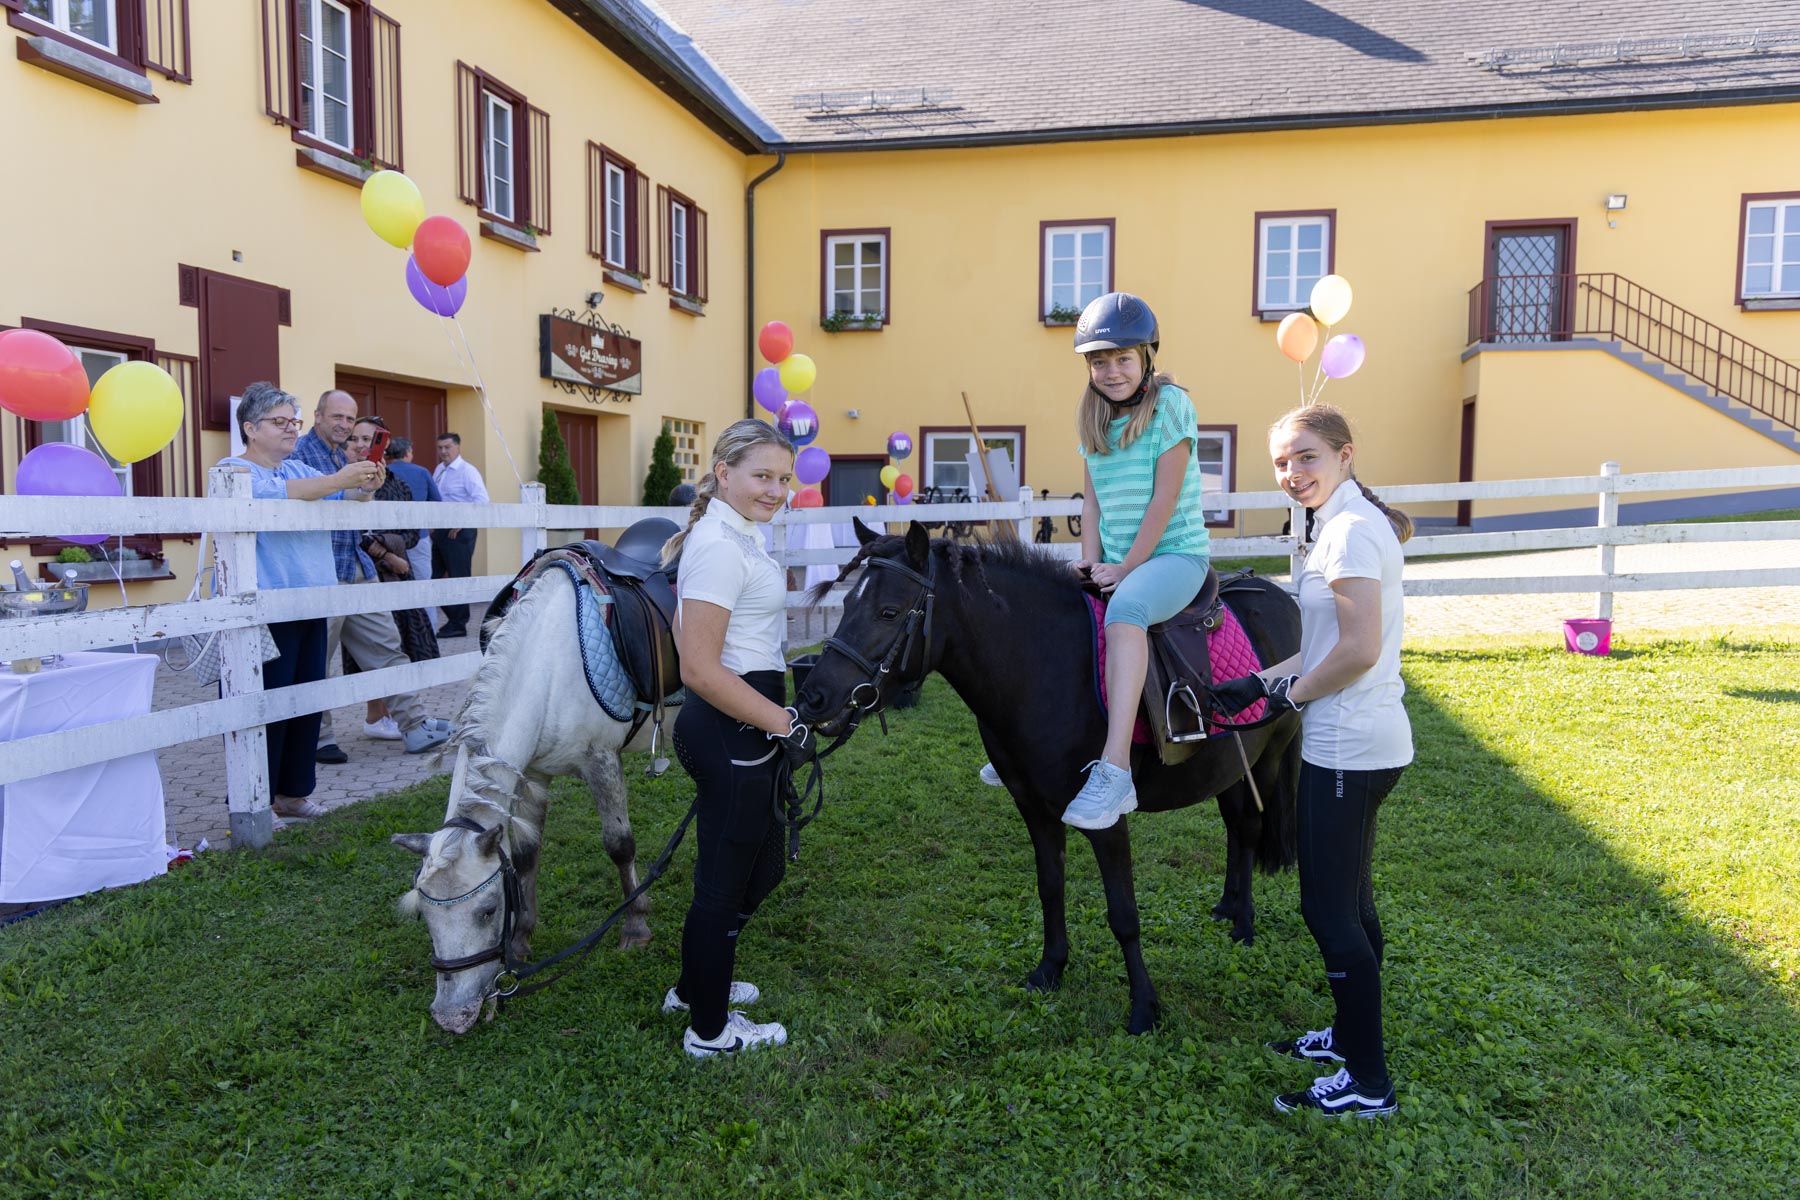 Zwei Ponys geführt von jugendlichen Reiterinnen und eine Besucherin die das Ponyreiten ausprobiert.